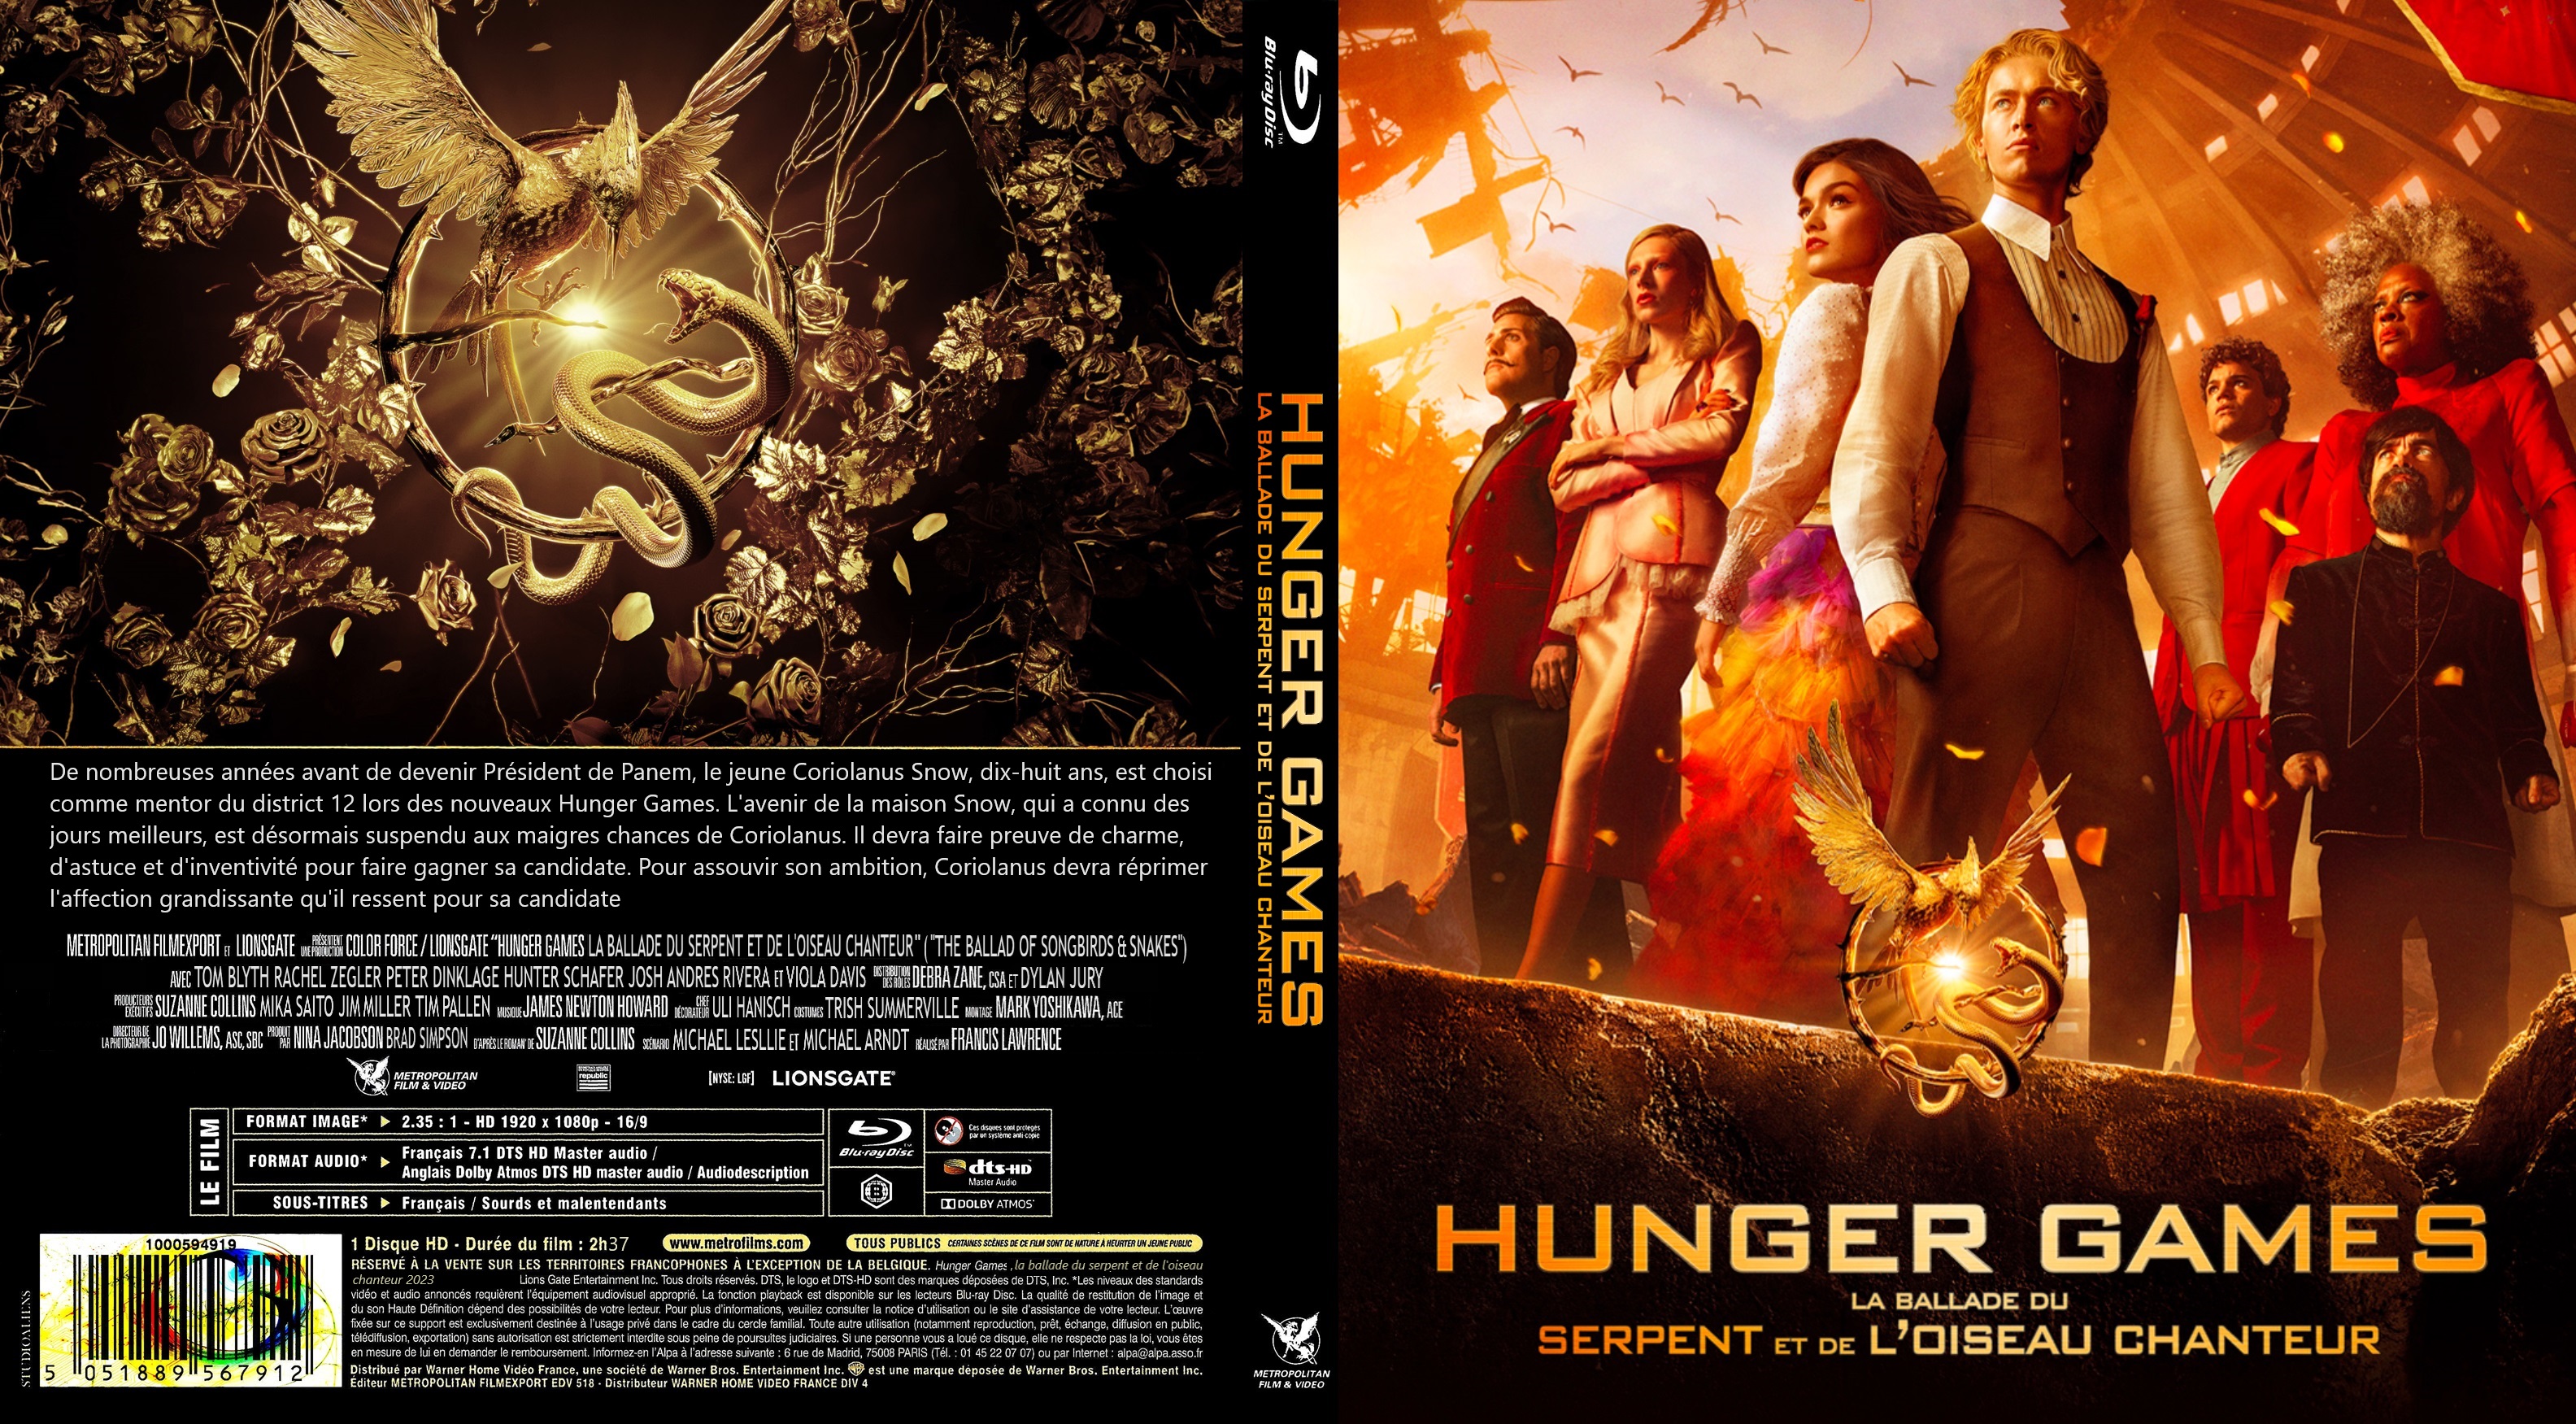 Jaquette DVD Hunger Games La Ballade du serpent et de l